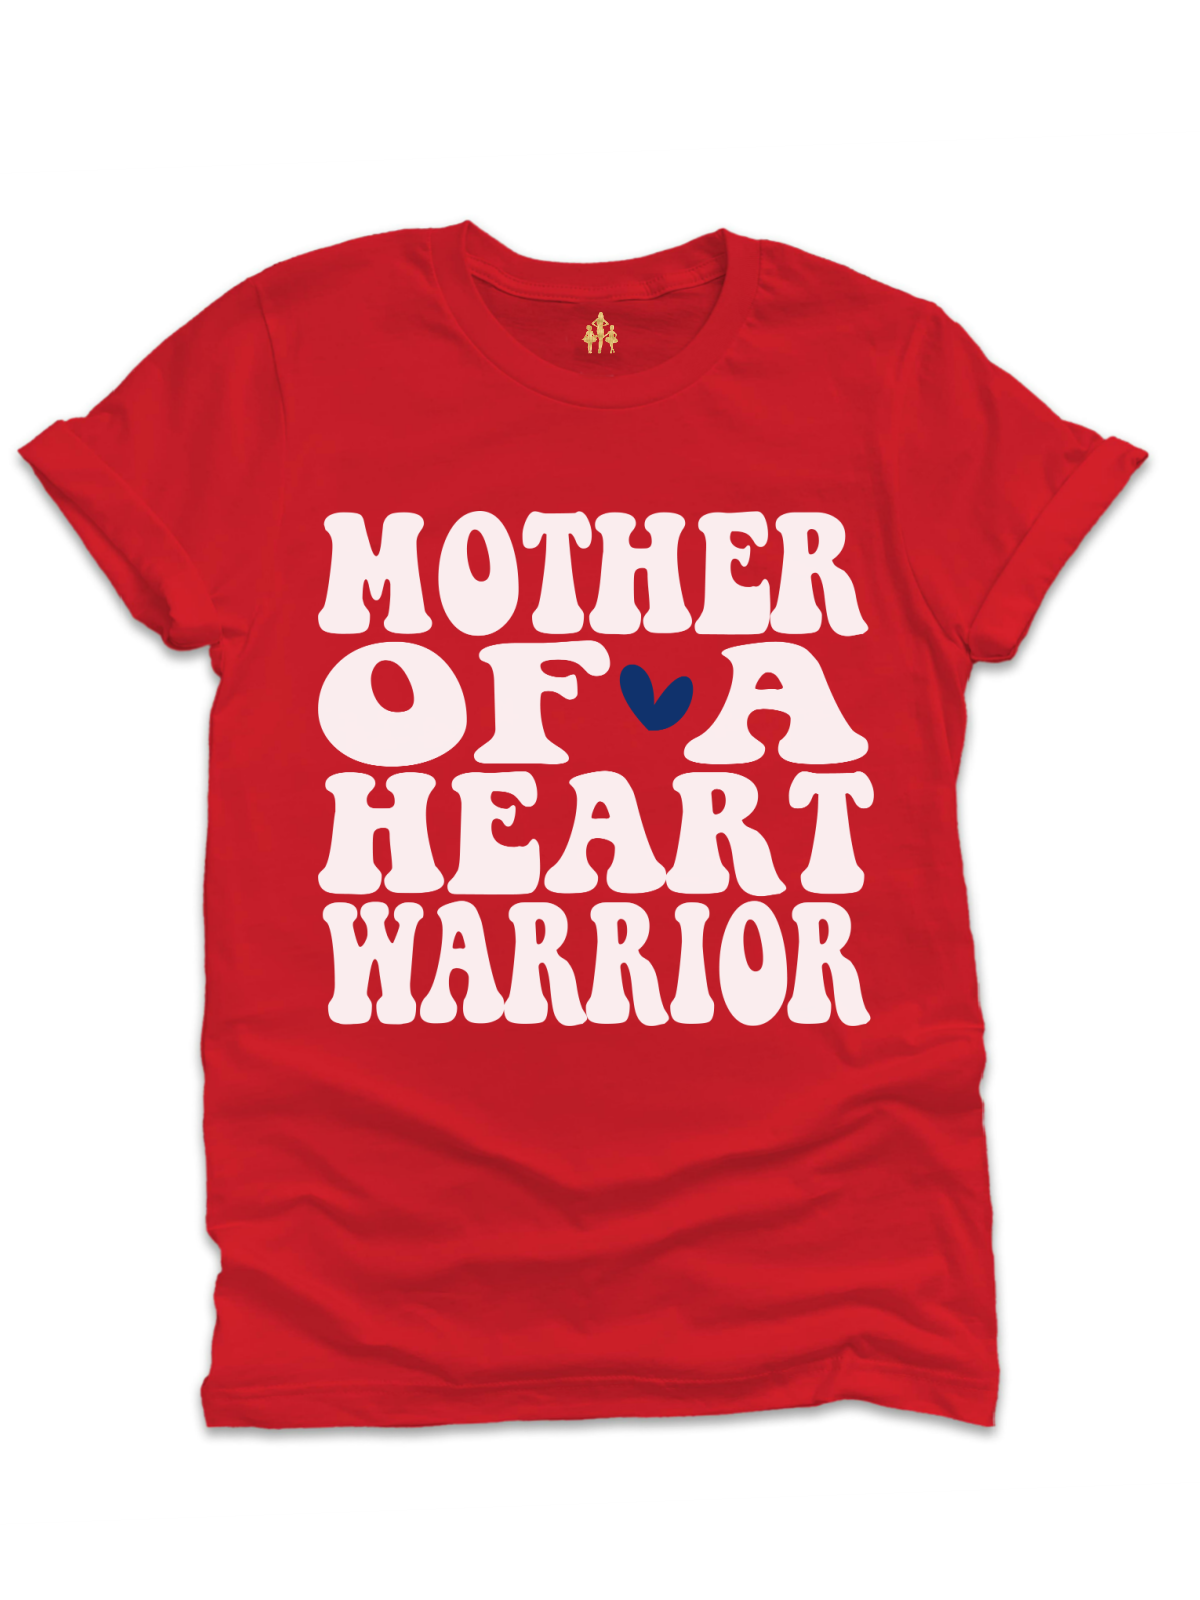 Mother of a Heart Warrior Adult CHD Awareness Shirt